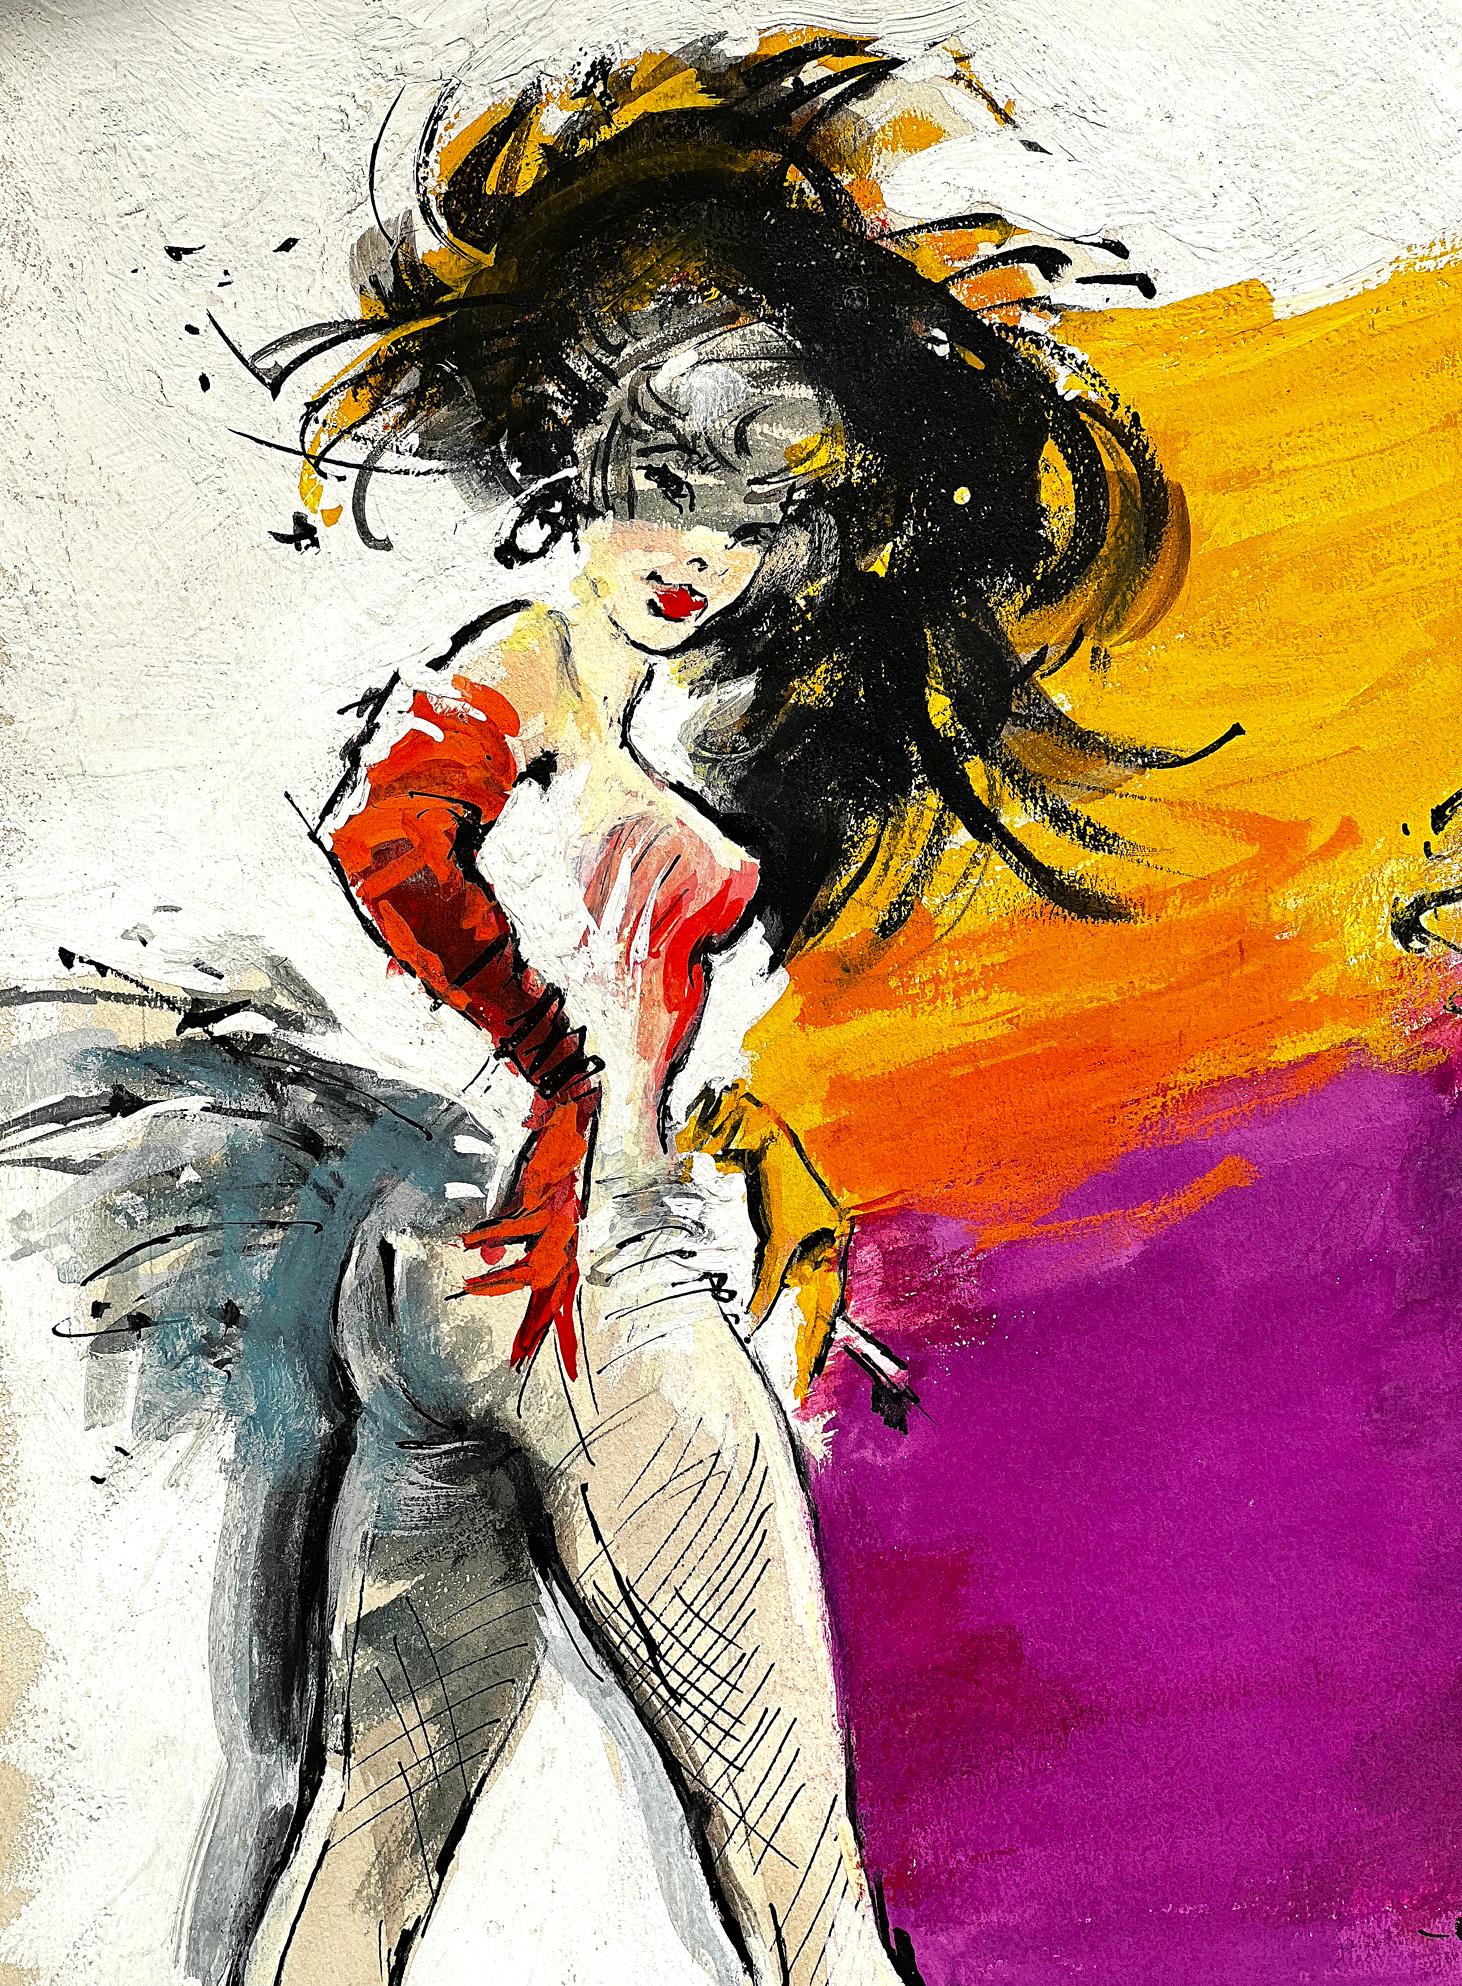 Sexy französische Cabaret-Tänzerinnen – Folies Bergere  Pulp-Taschenbuch-Cover (Impressionismus), Painting, von George Ziel